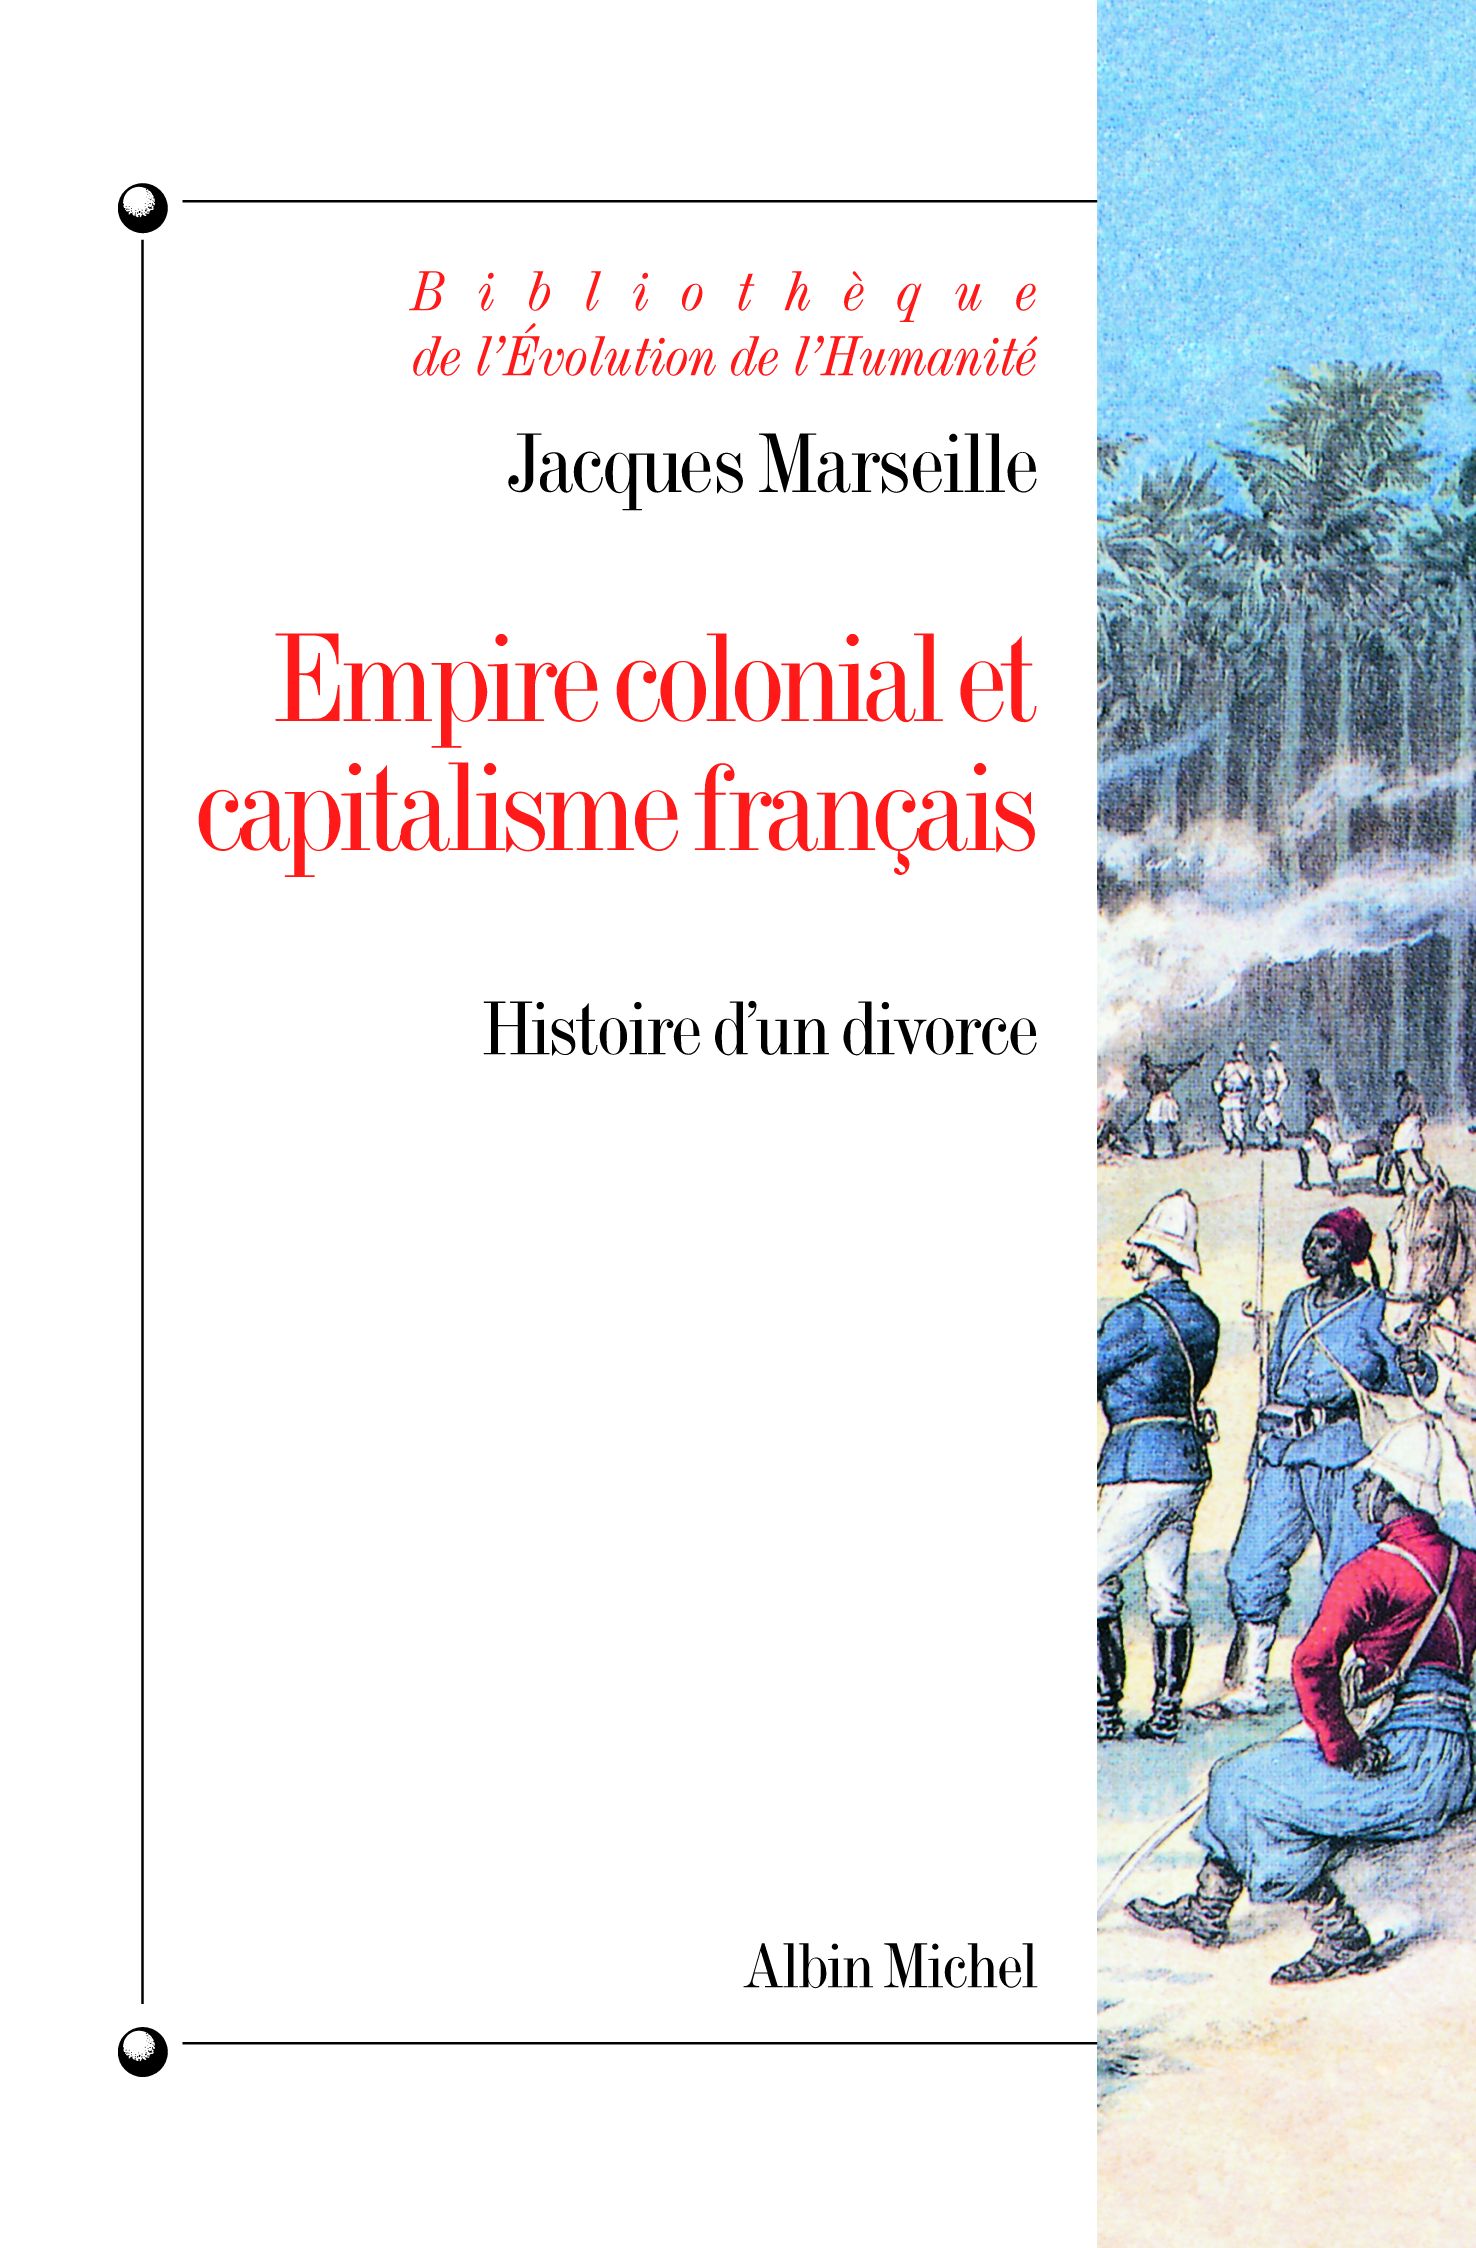 Couverture du livre Empire colonial et capitalisme français